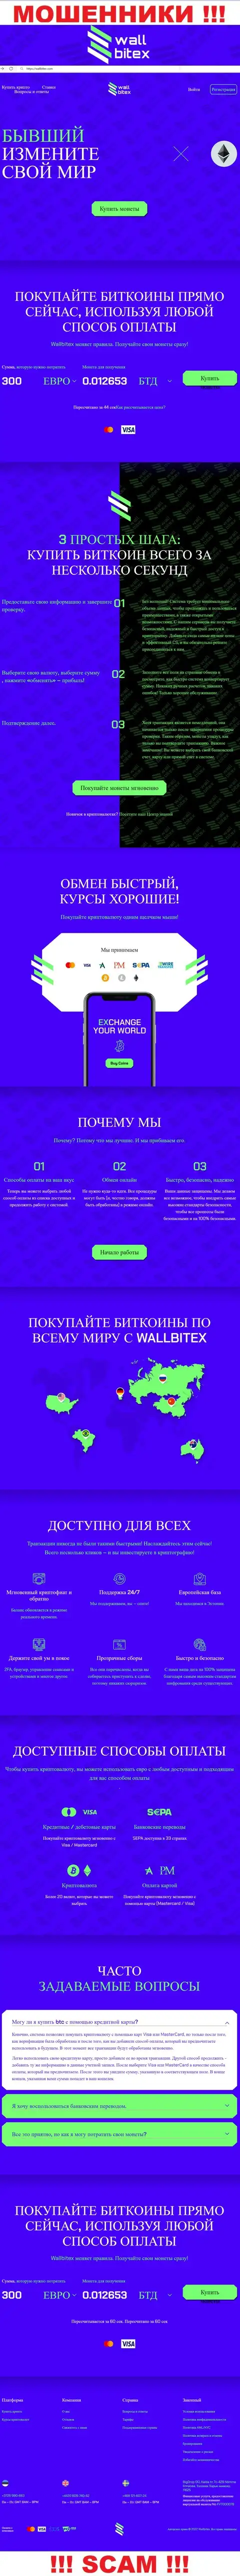 WallBitex Com - сайт противозаконно действующей конторы WallBitex